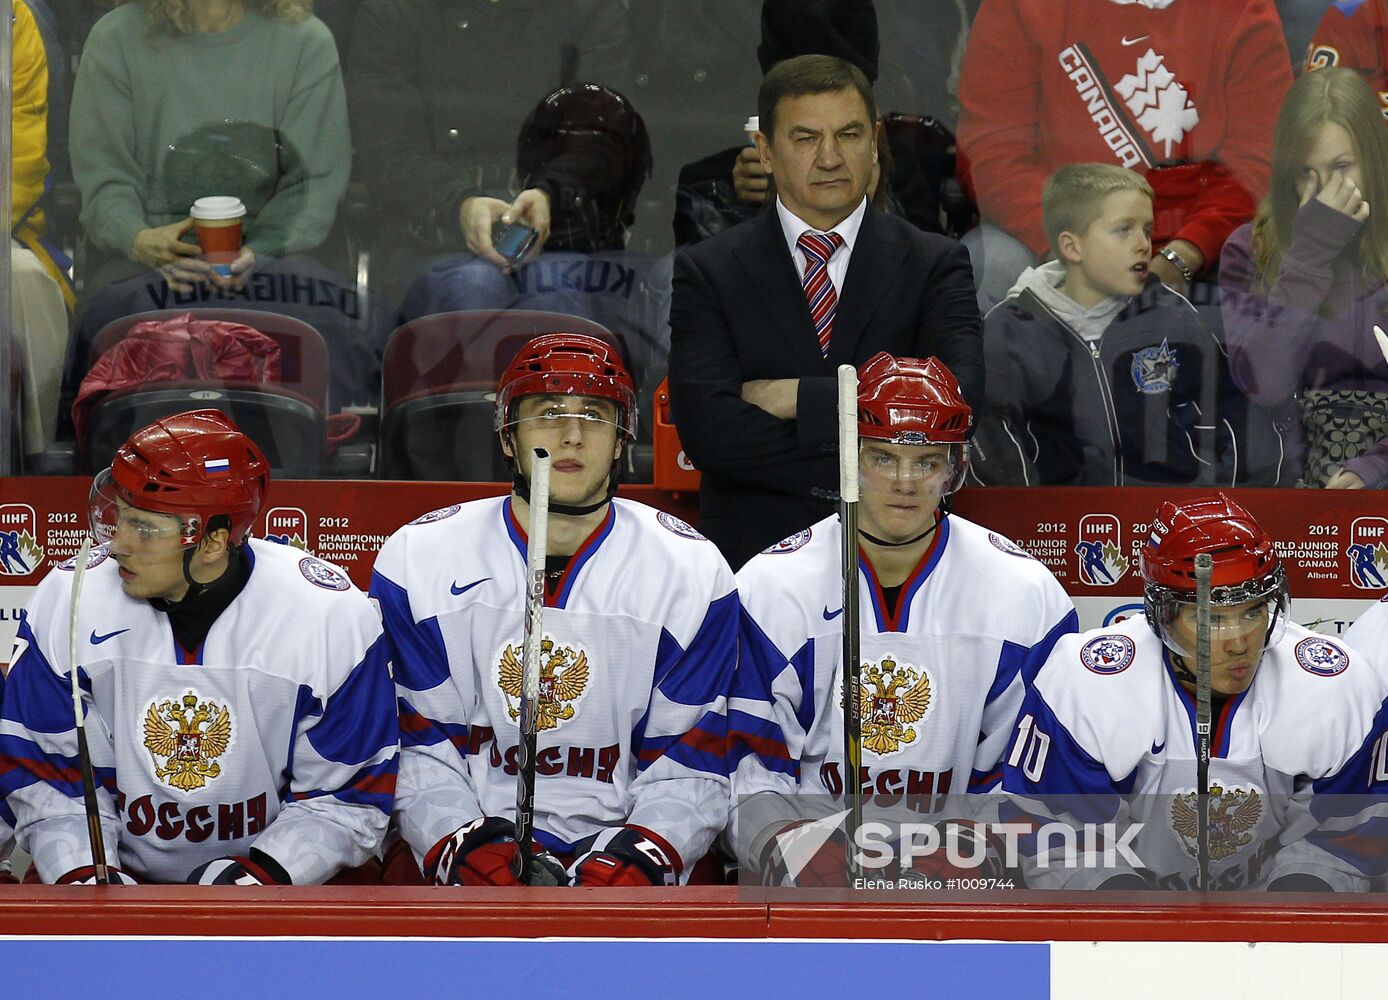 2011 World Junior Hockey Championship. Russia vs. Switzerland